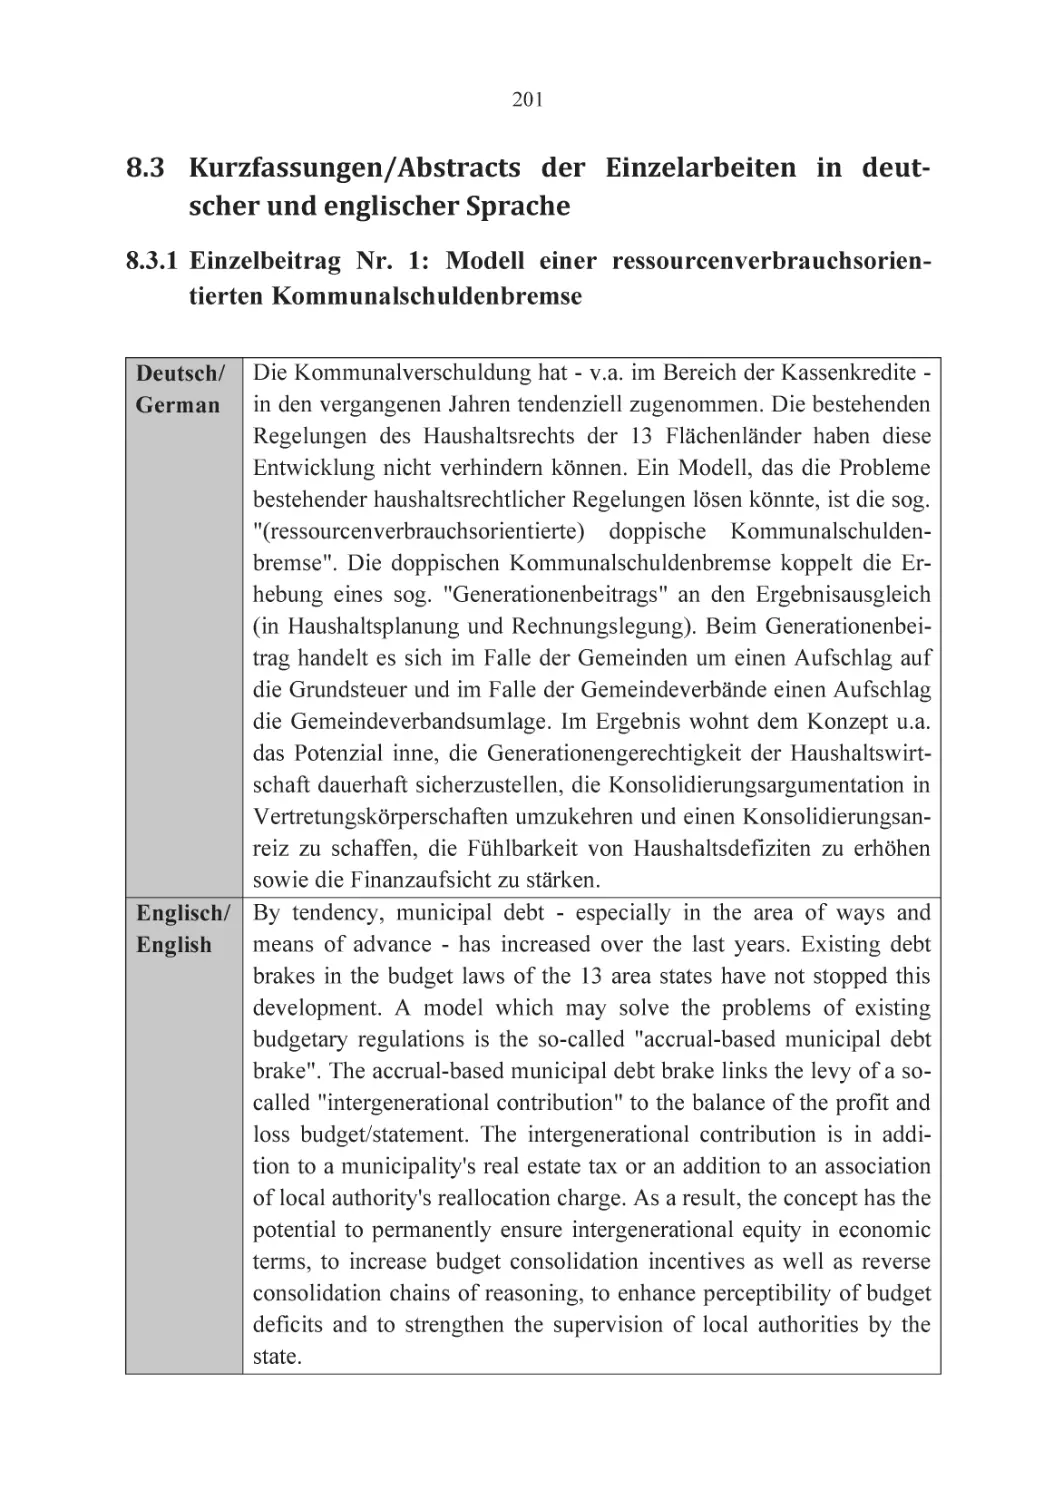 8.3 Kurzfassungen/Abstracts der Einzelarbeiten in deutscher und englischer Sprache
8.3.1 Einzelbeitrag Nr. 1